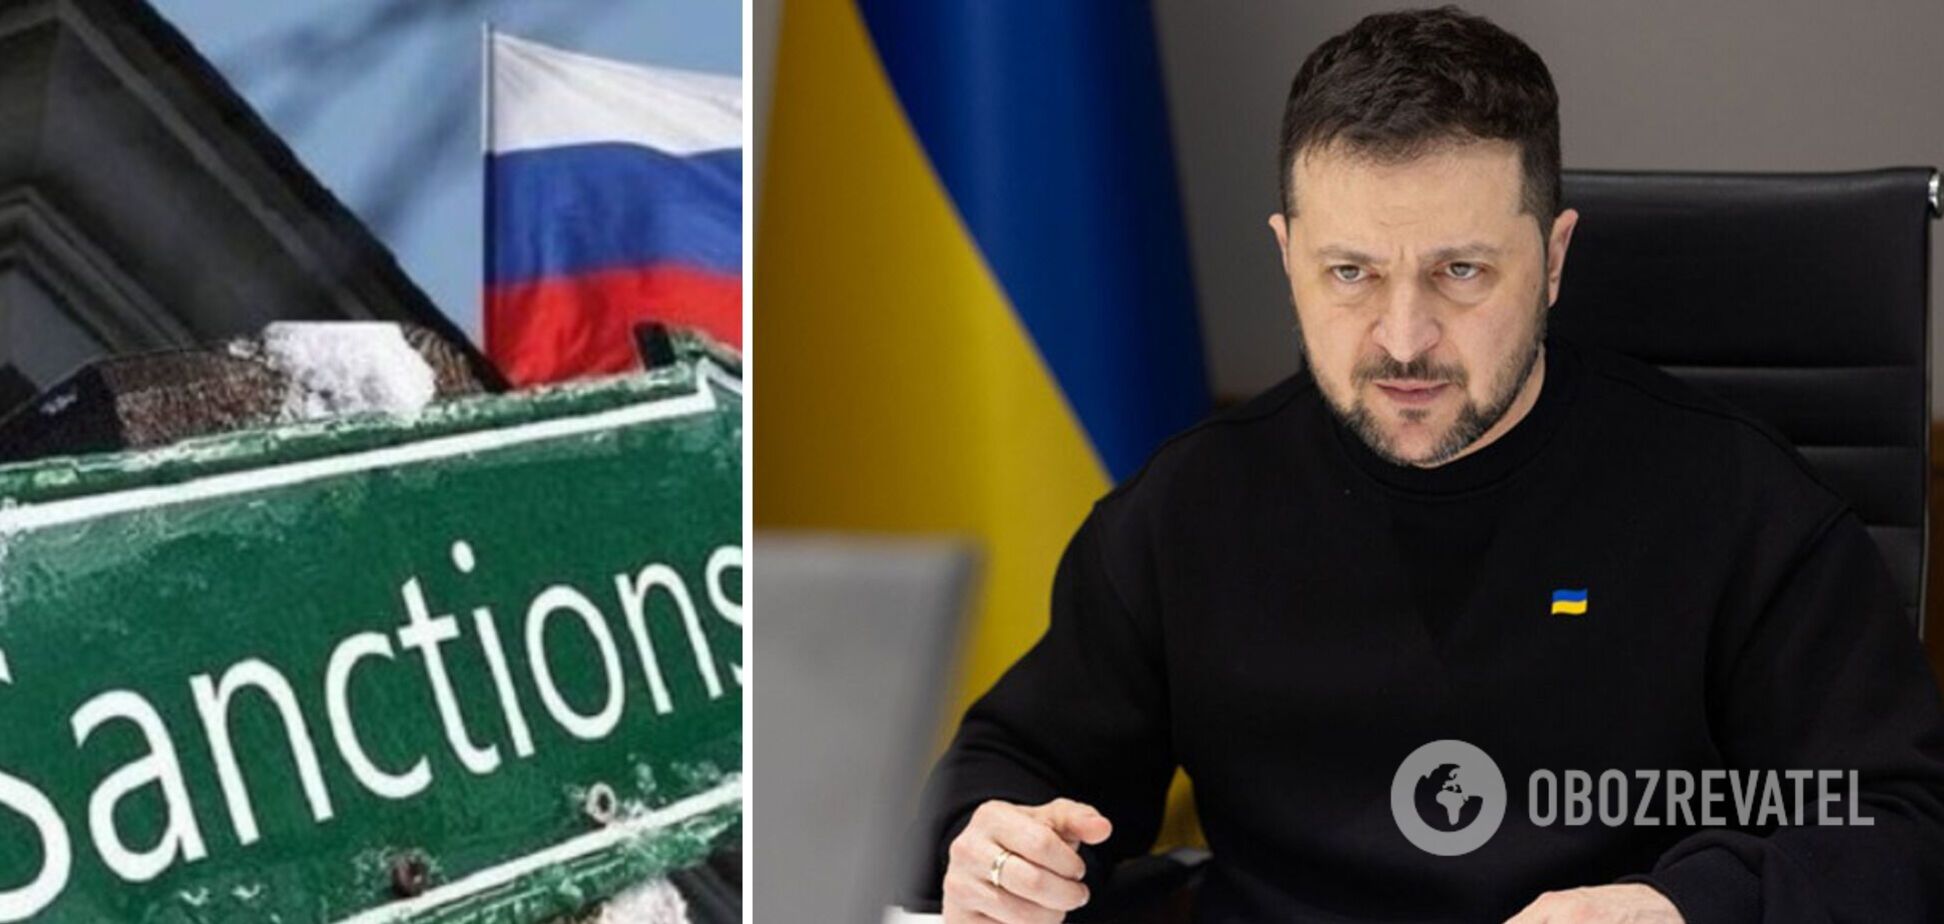 Украинские санкции – это часть глобального давления на Россию, заявил глава государства